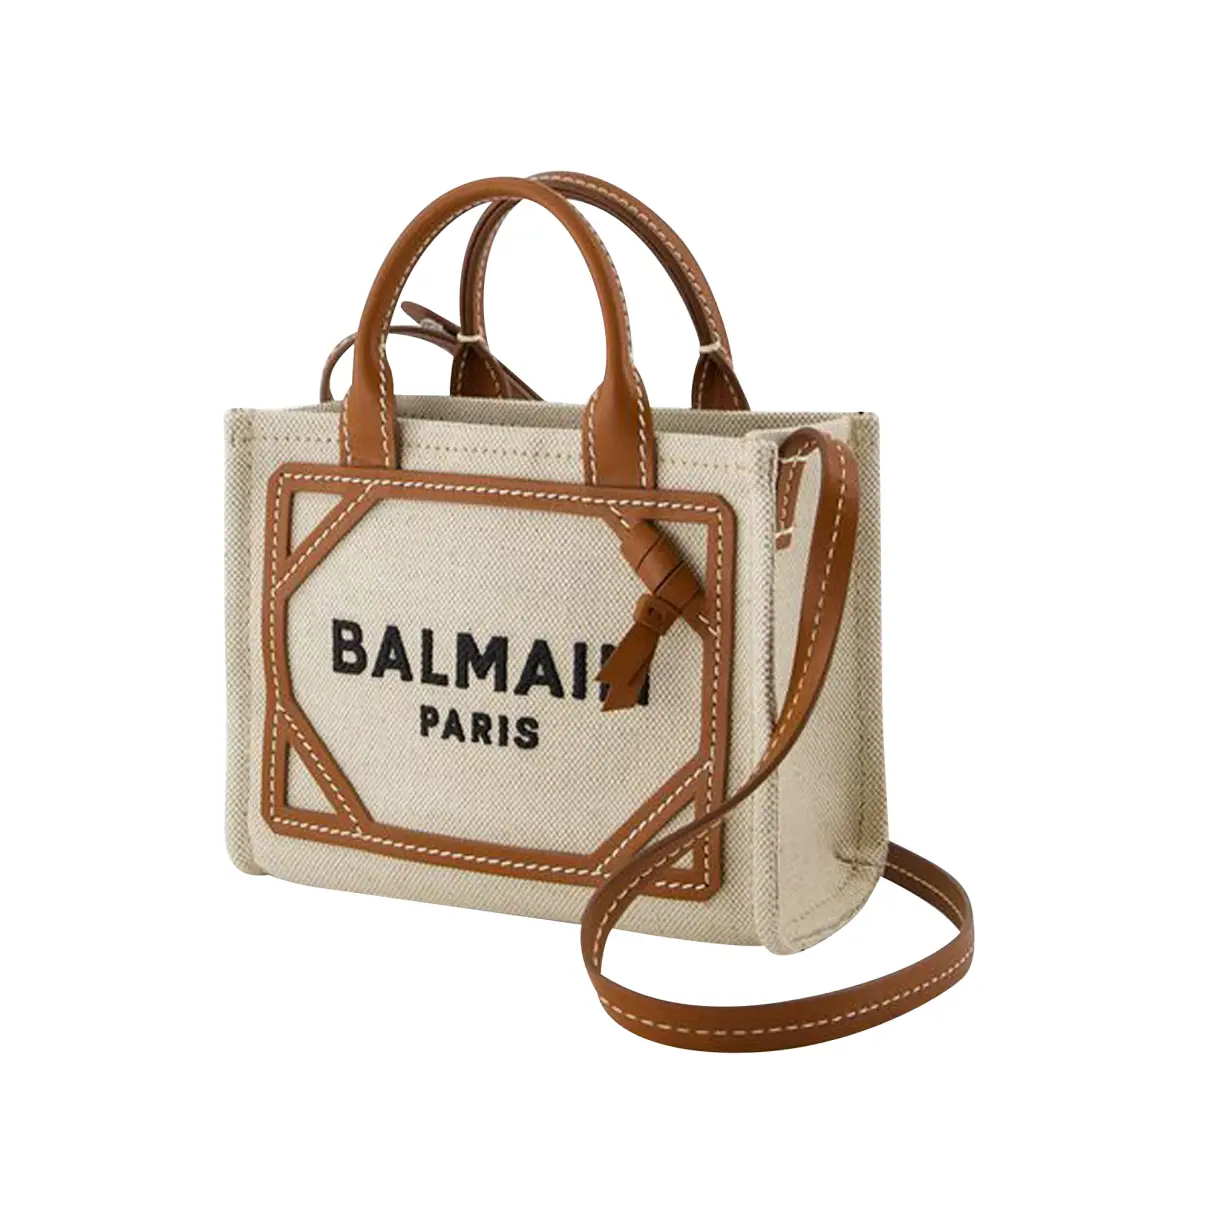 Buy Balmain Bag online